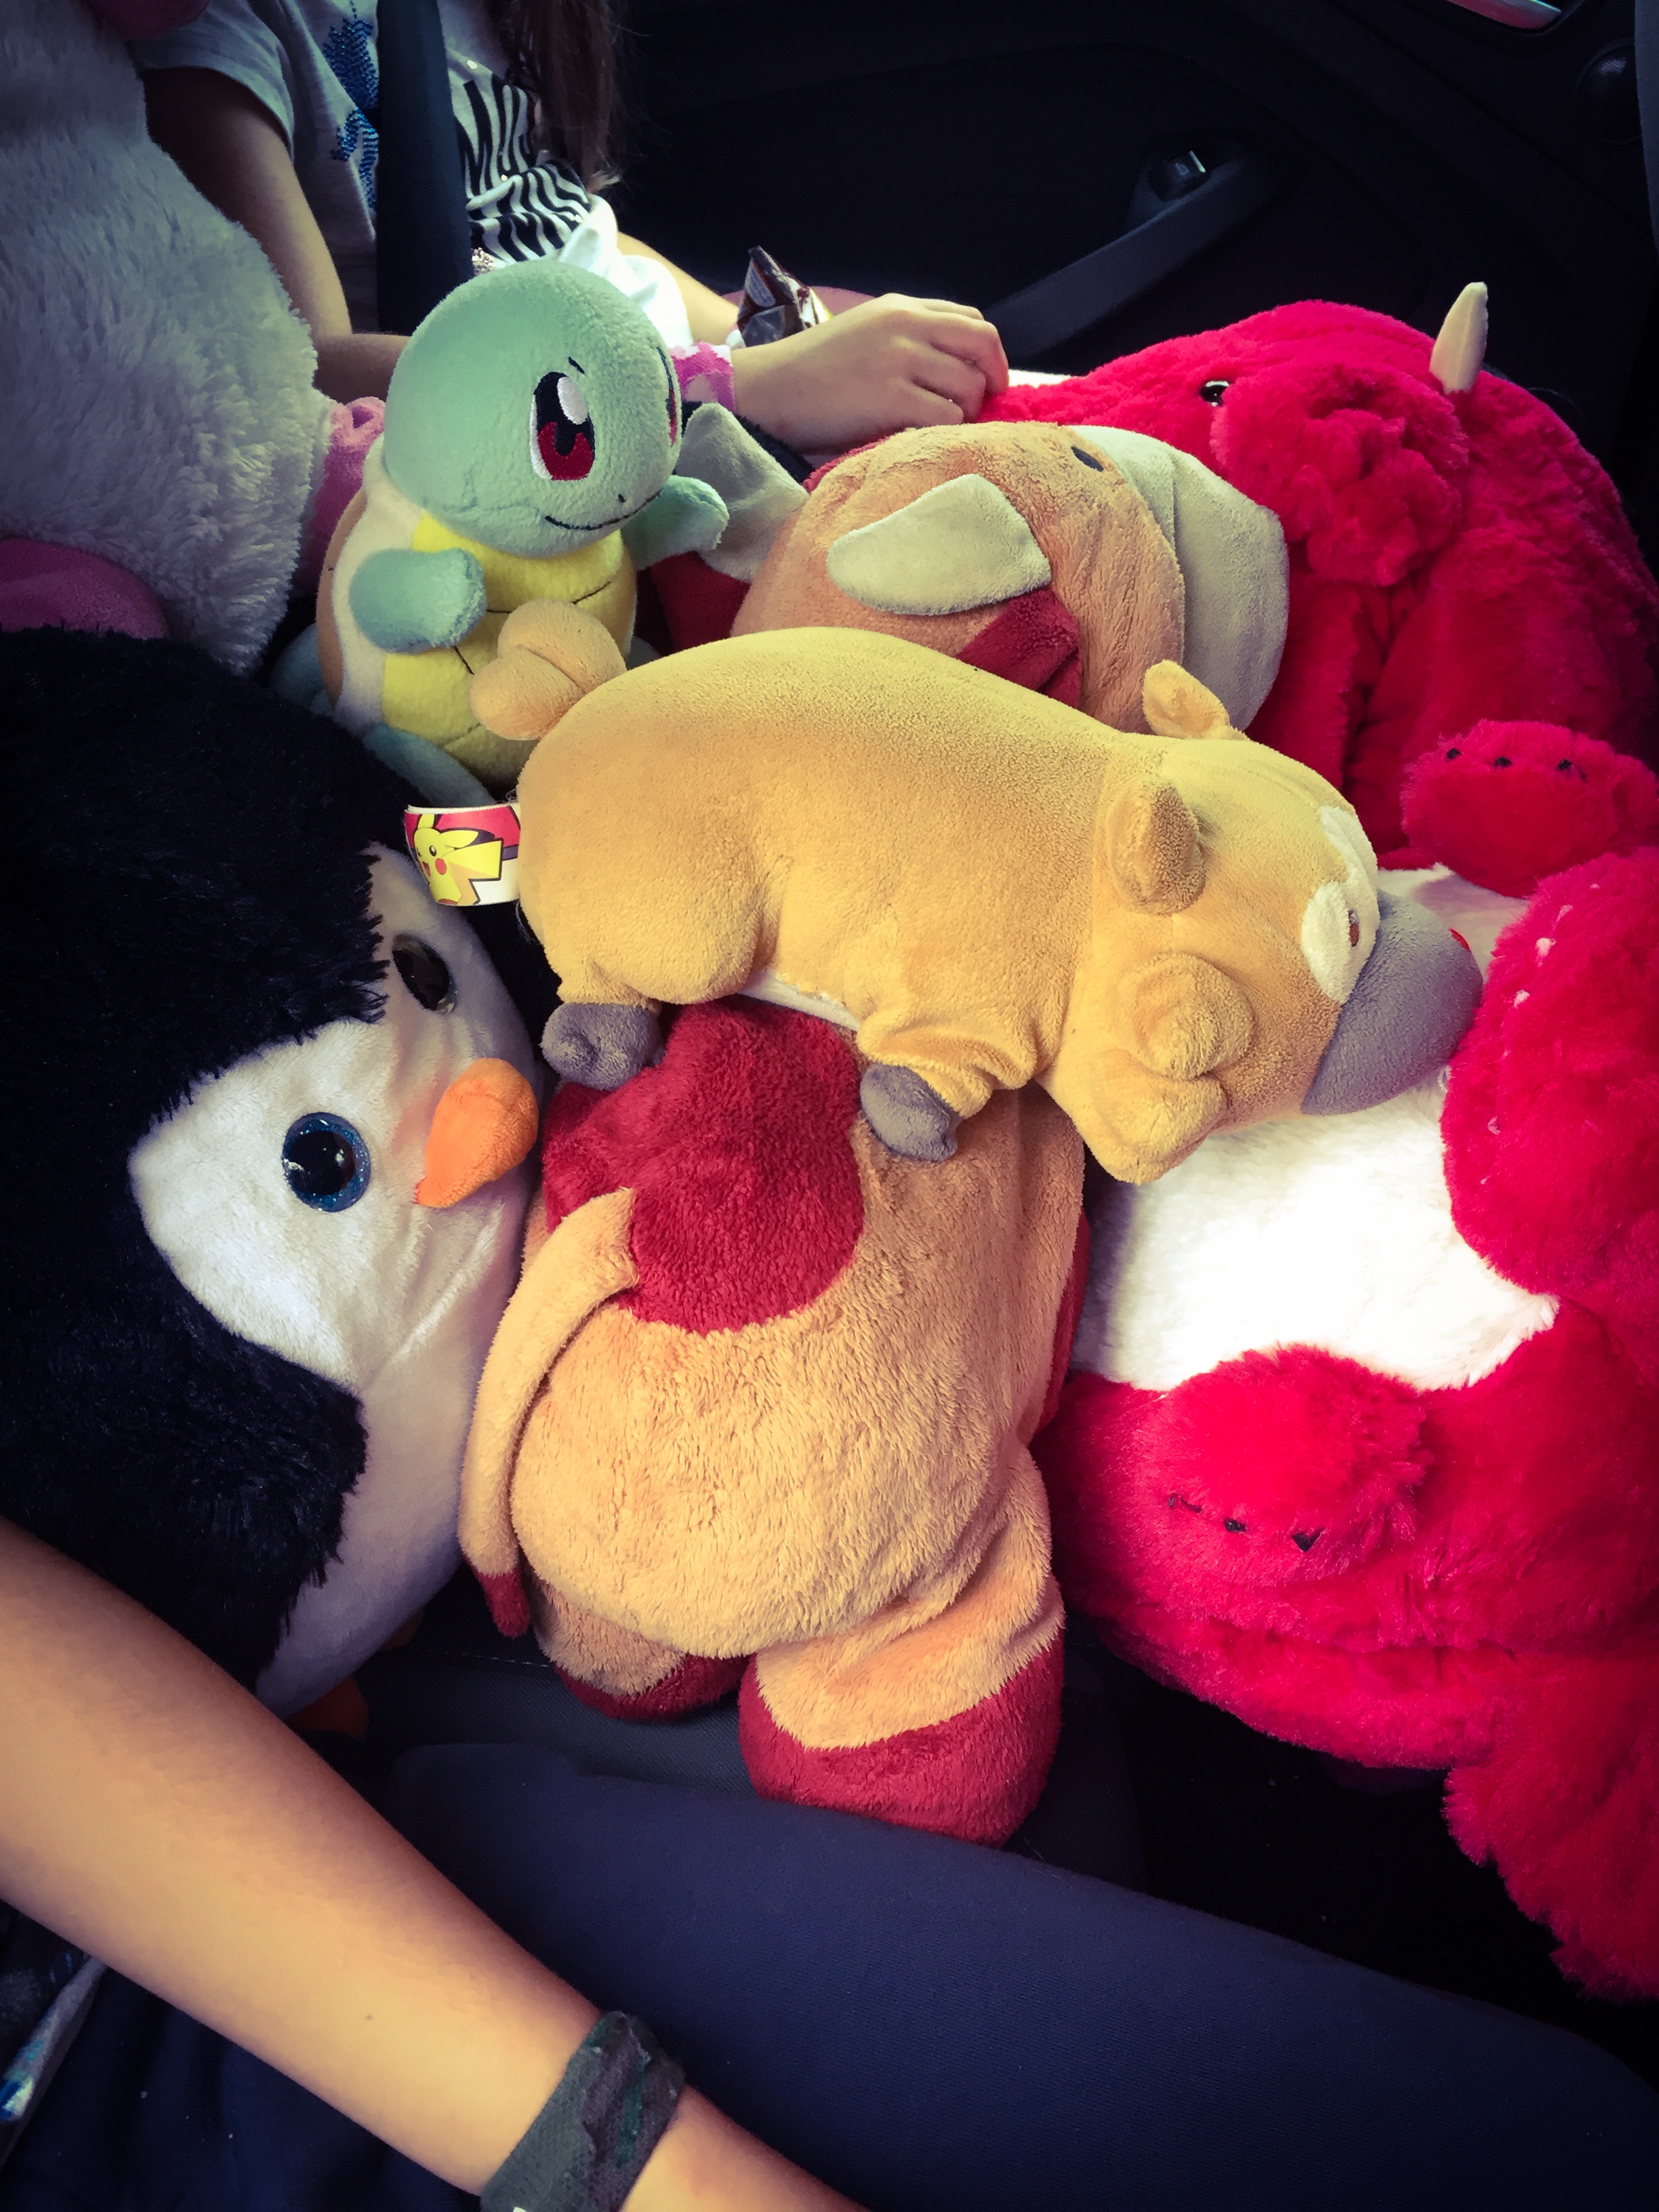 Car full of Cuddlies